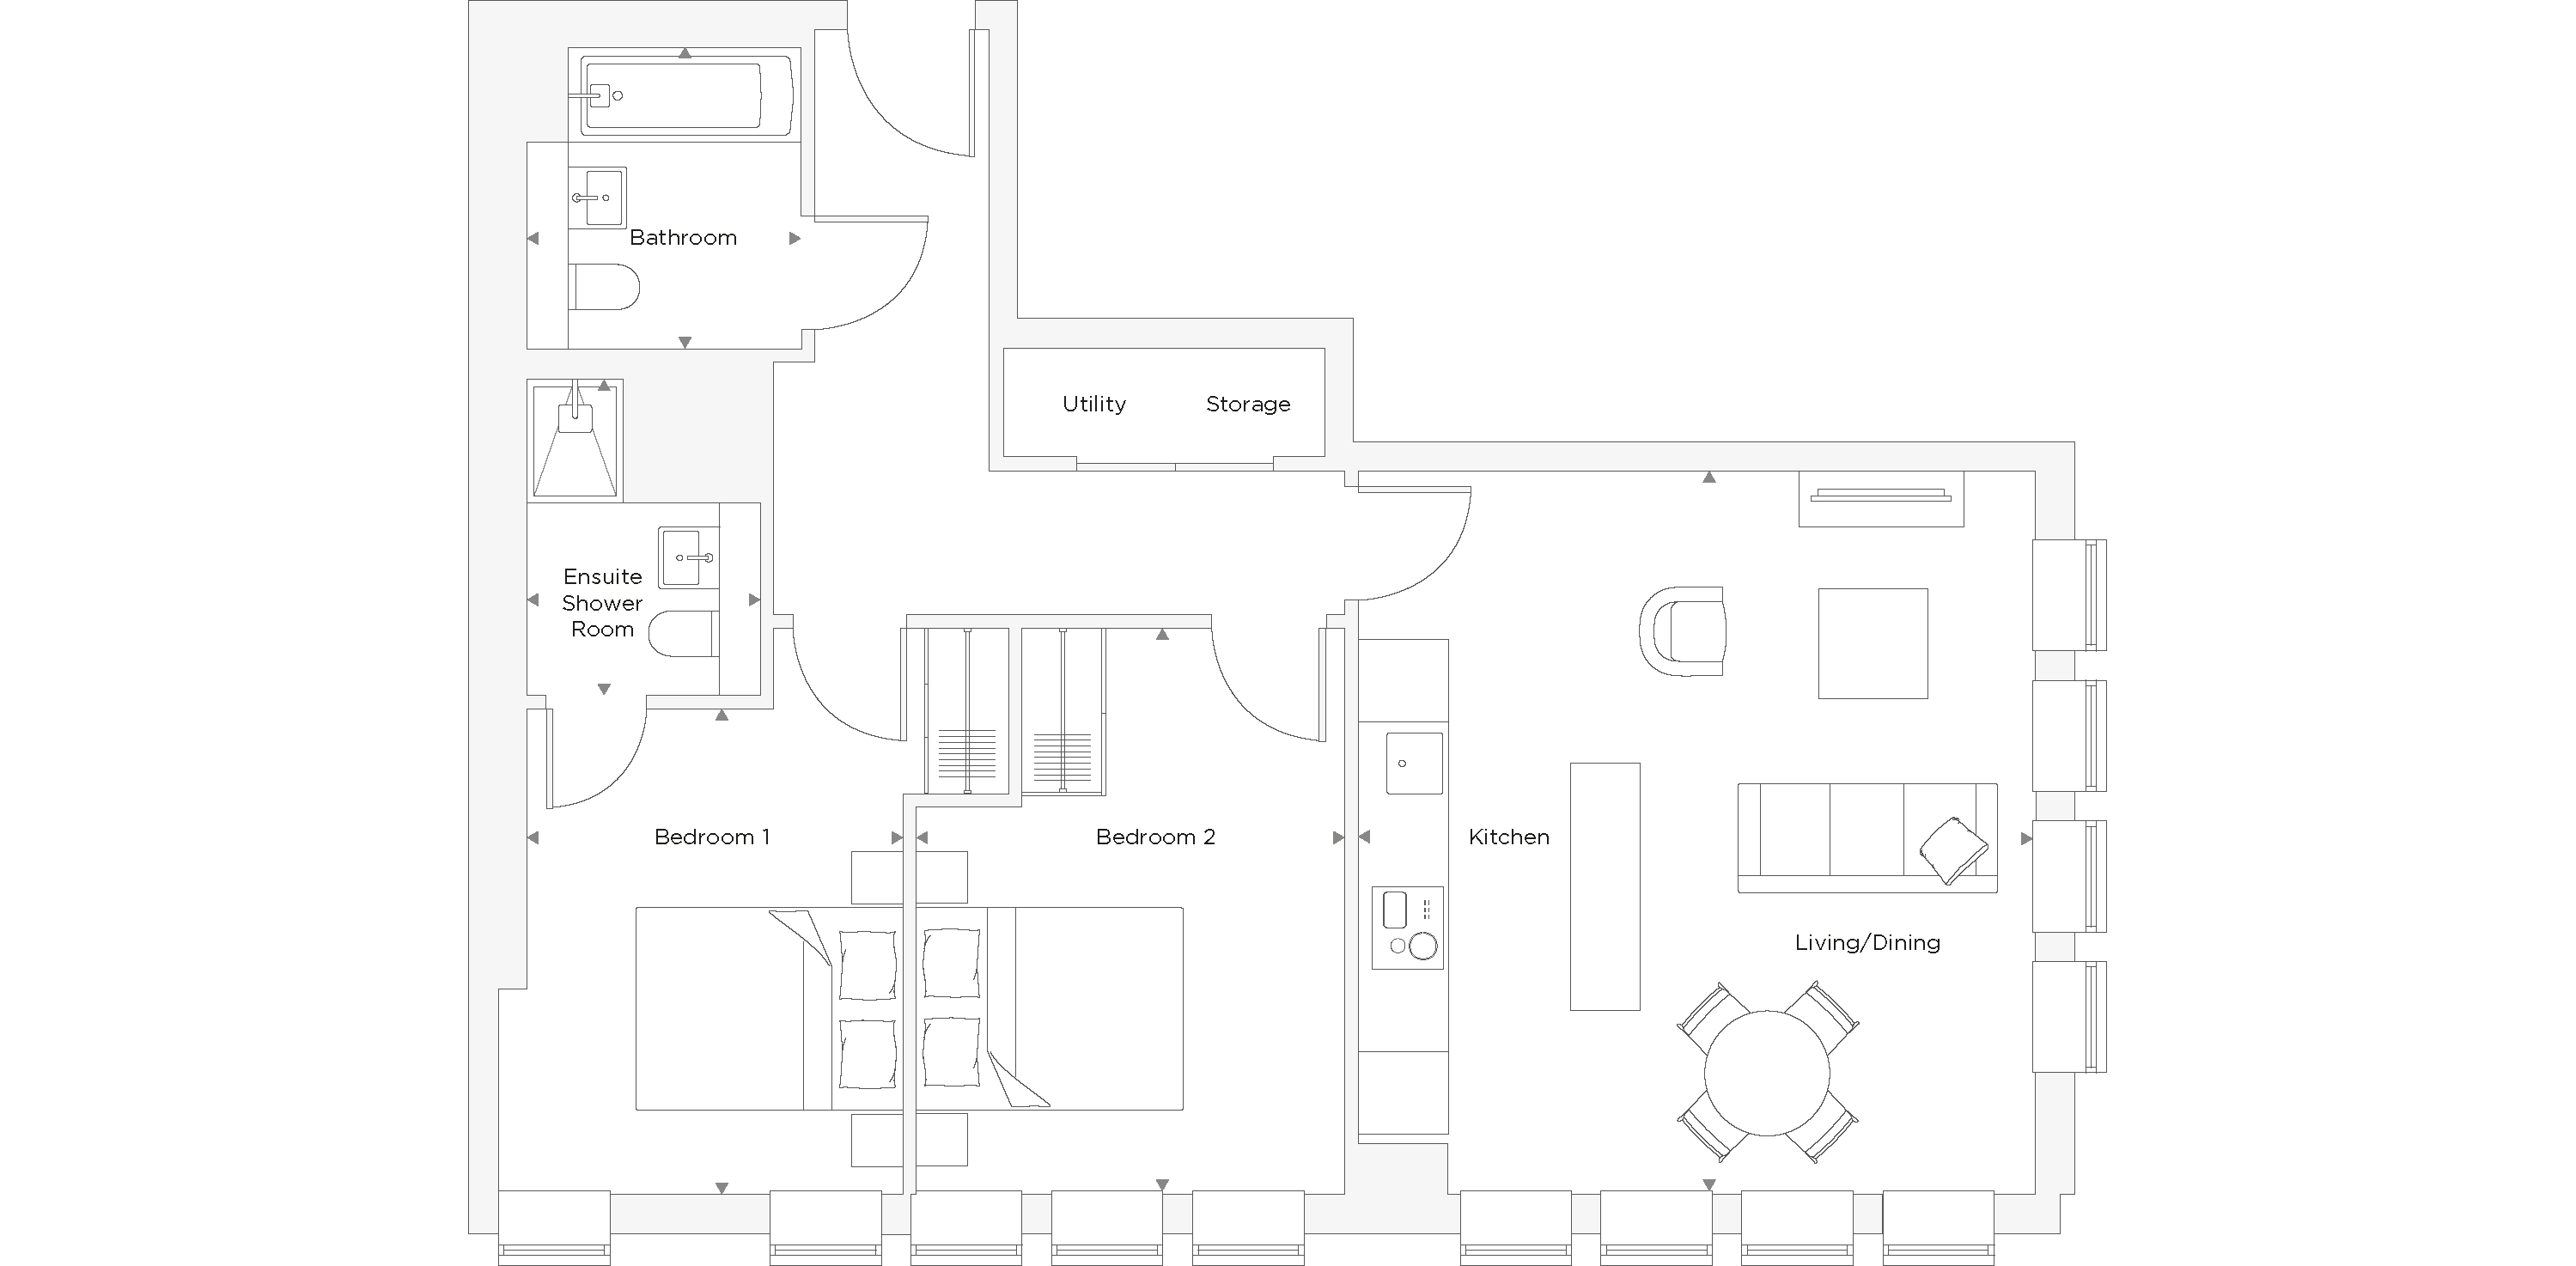 Two Bedroom Apartment C.3.05 Floor Plan